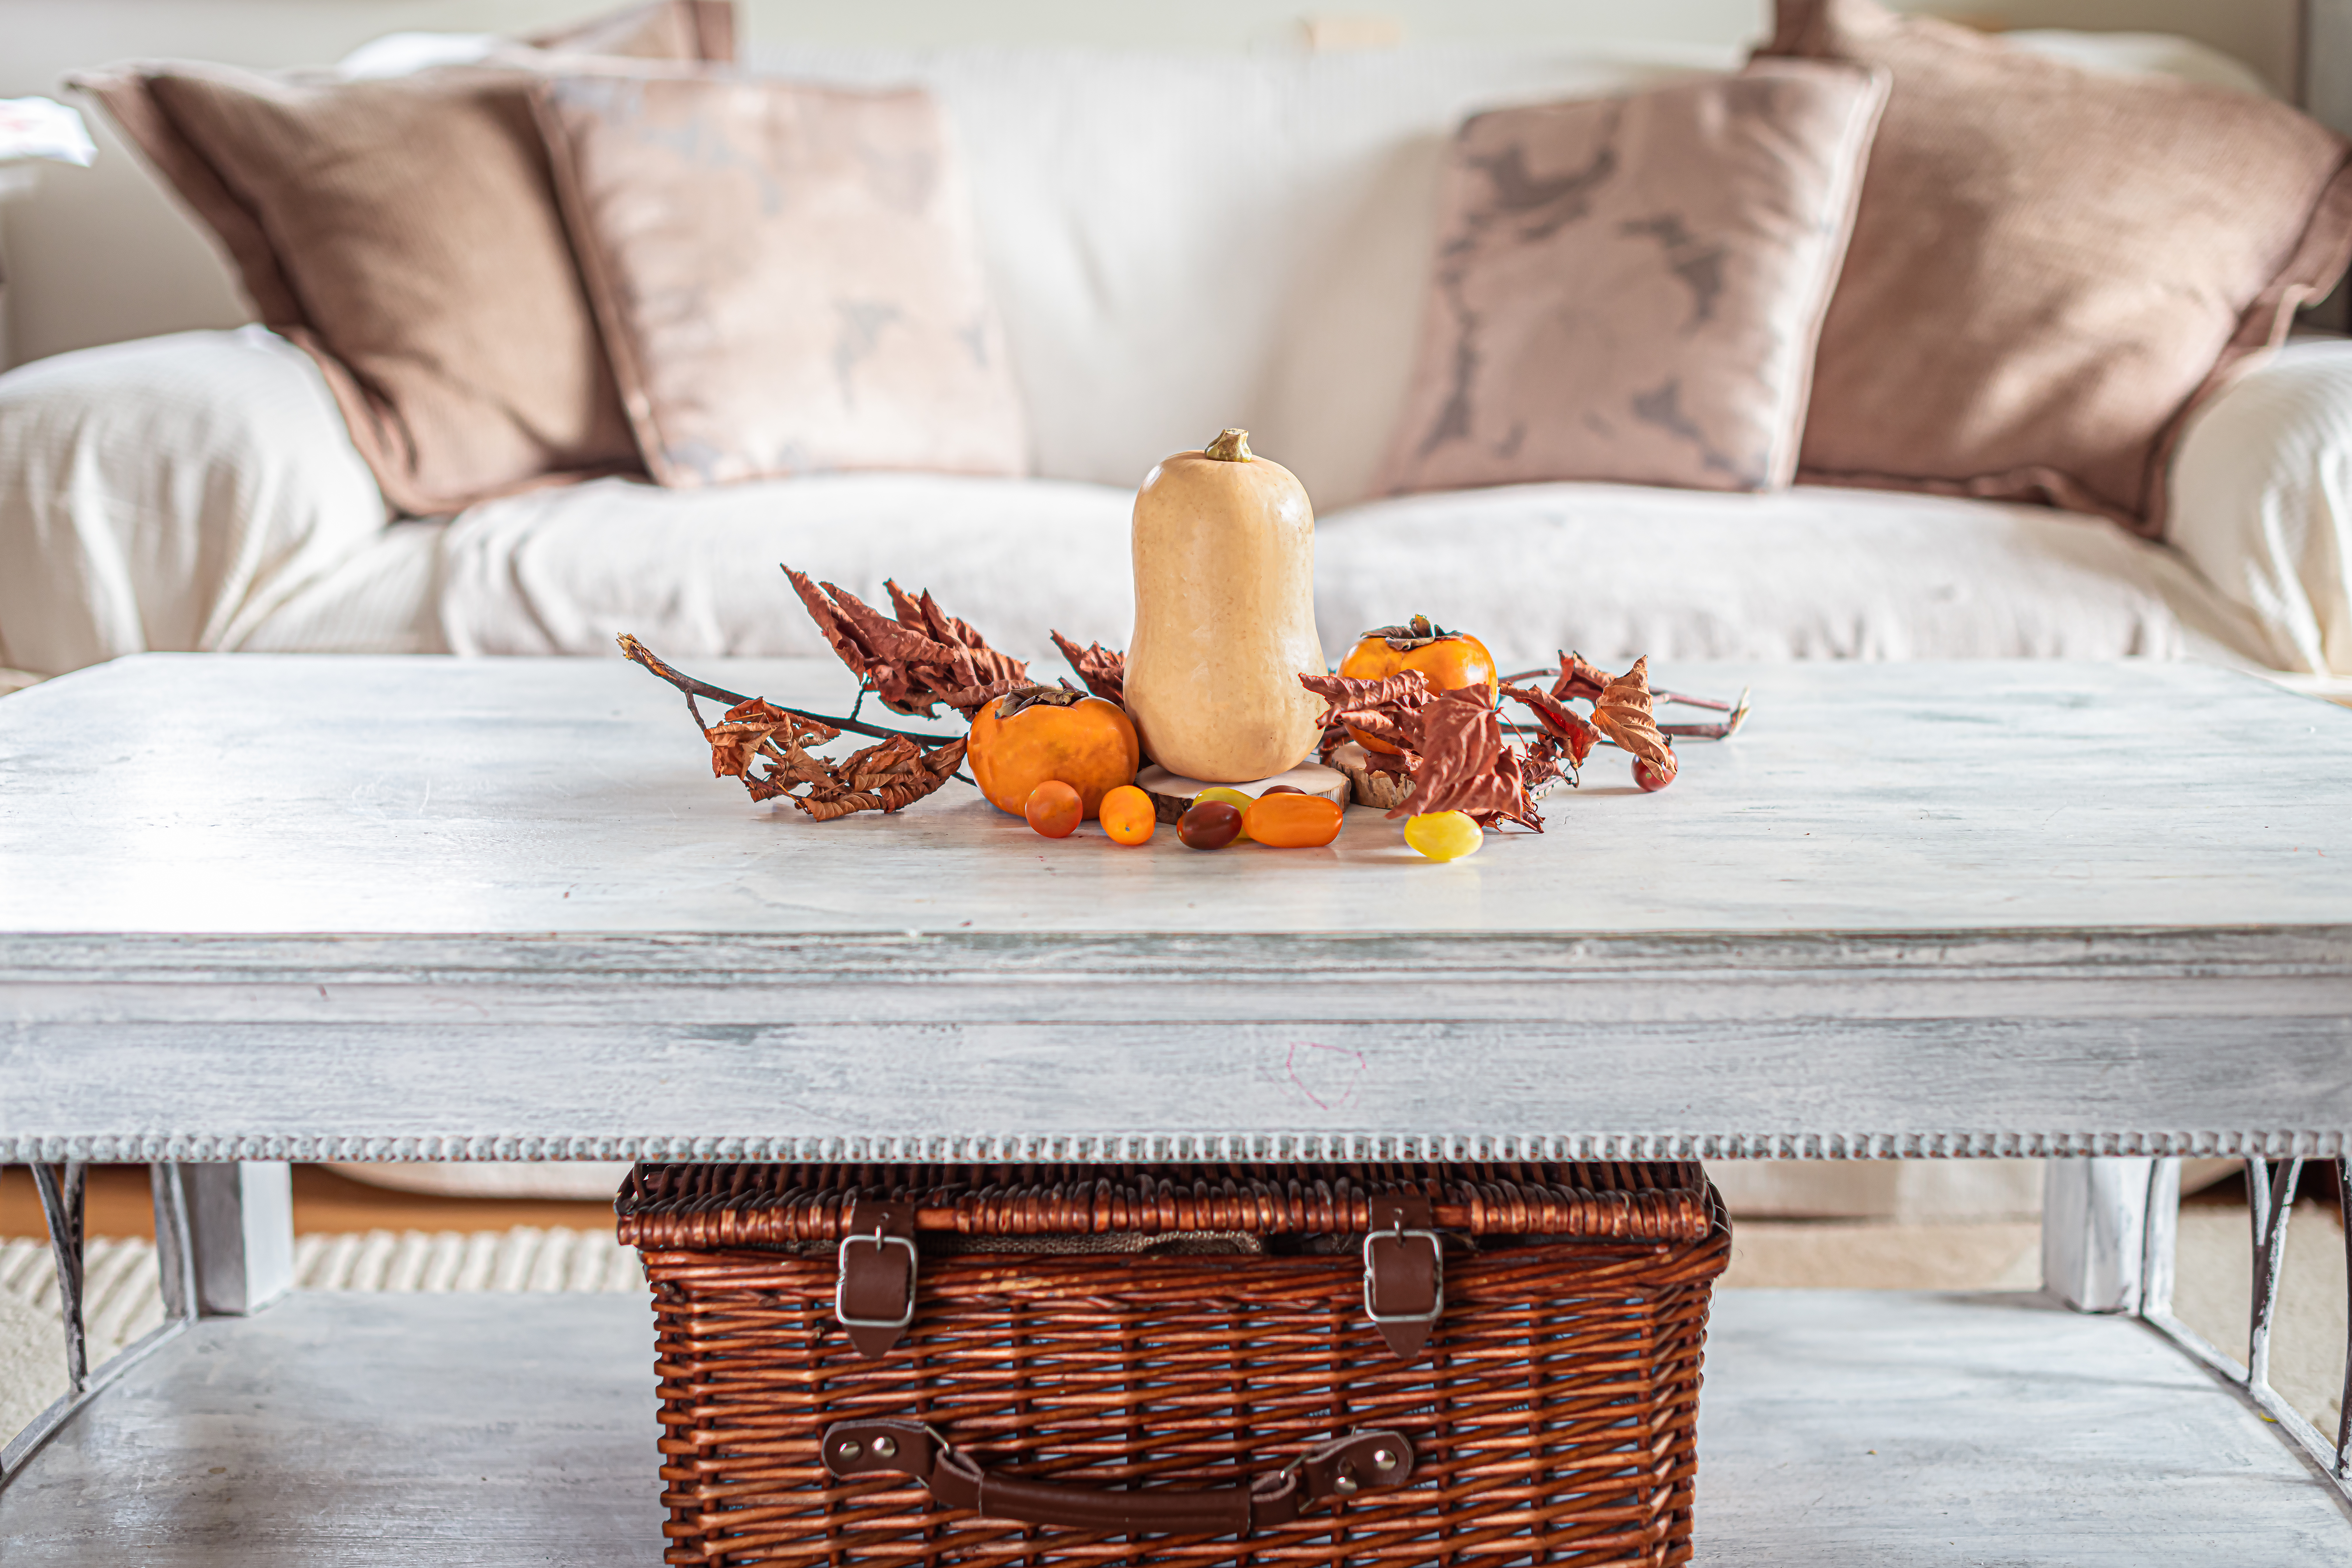 Embrace the Season: Make Your Home Smell Like Fall